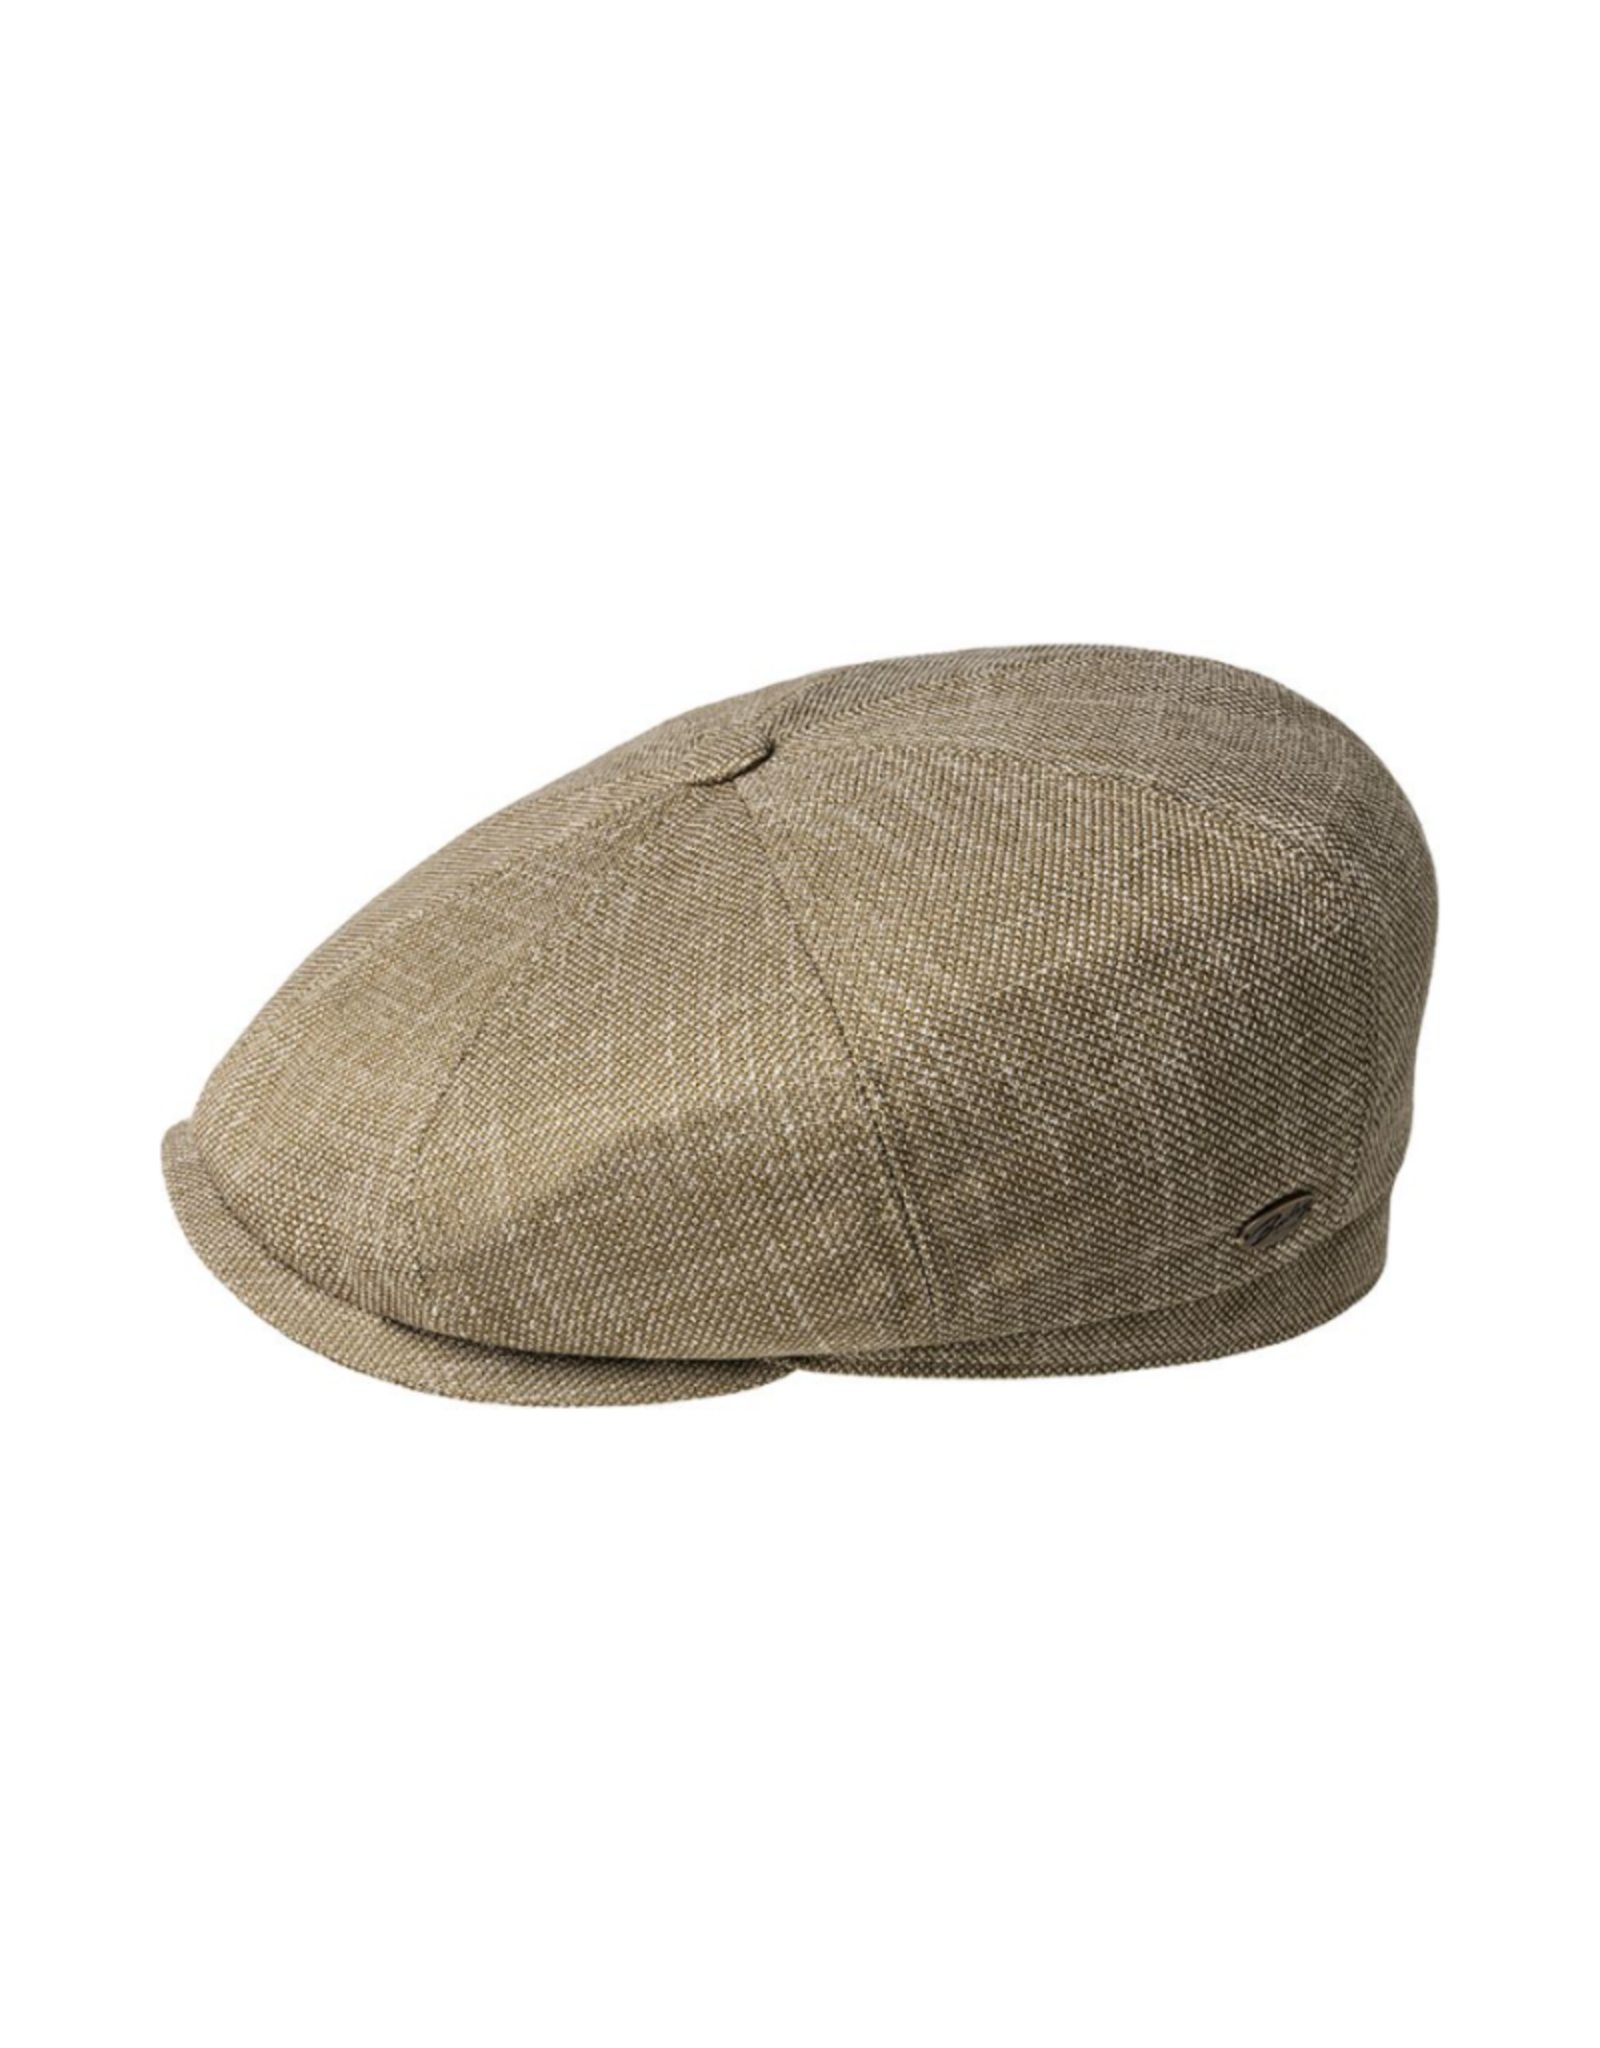 Bailey Hat Co. HAT-8/4 CAP "DUNCAN" W/BUTTON, SHT VISOR